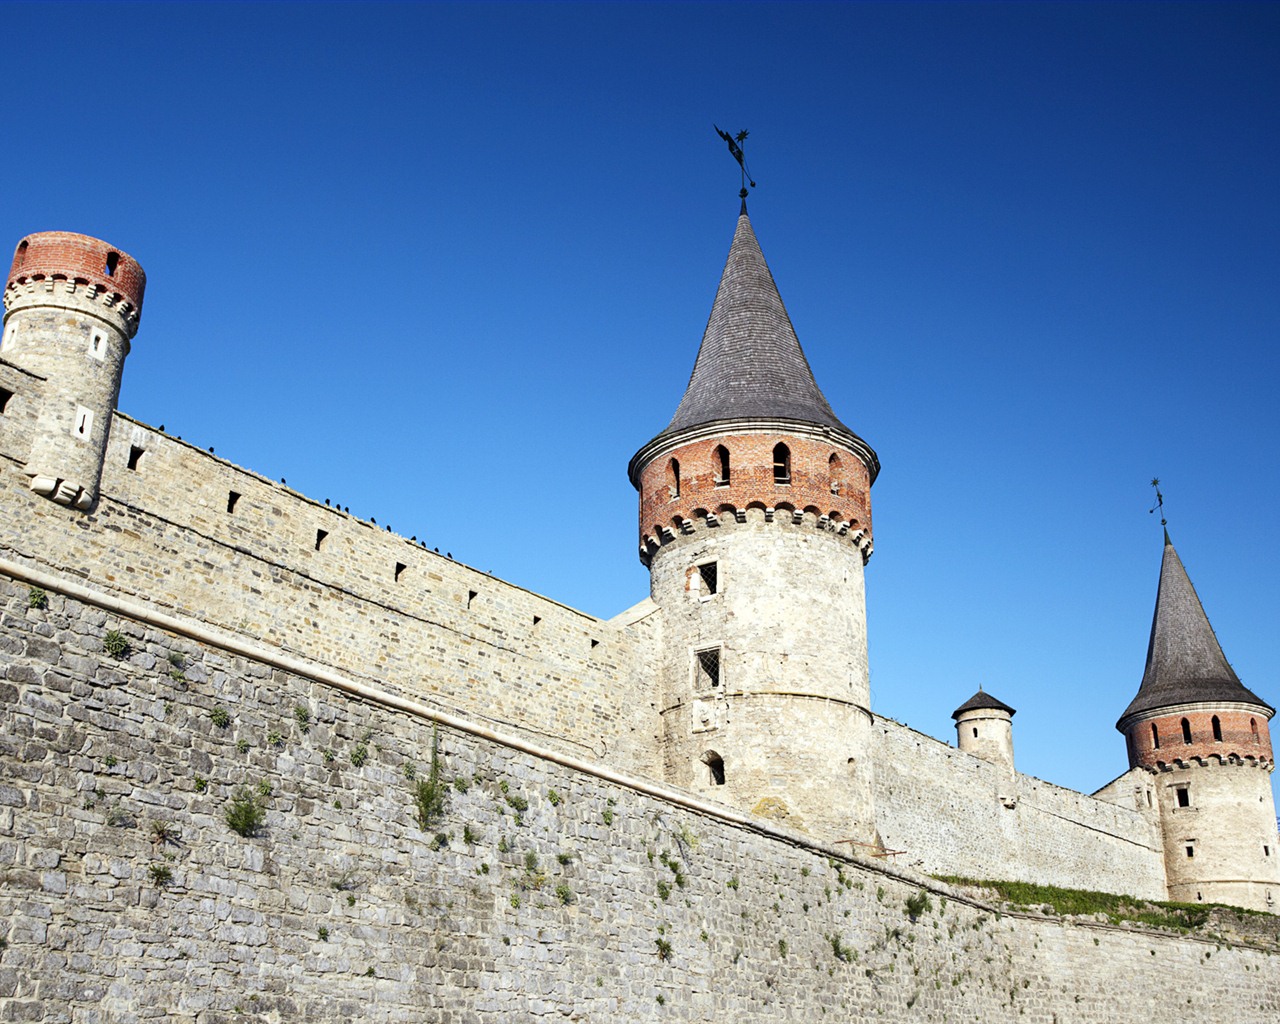 Fondos de pantalla de Windows 7: Castillos de Europa #21 - 1280x1024